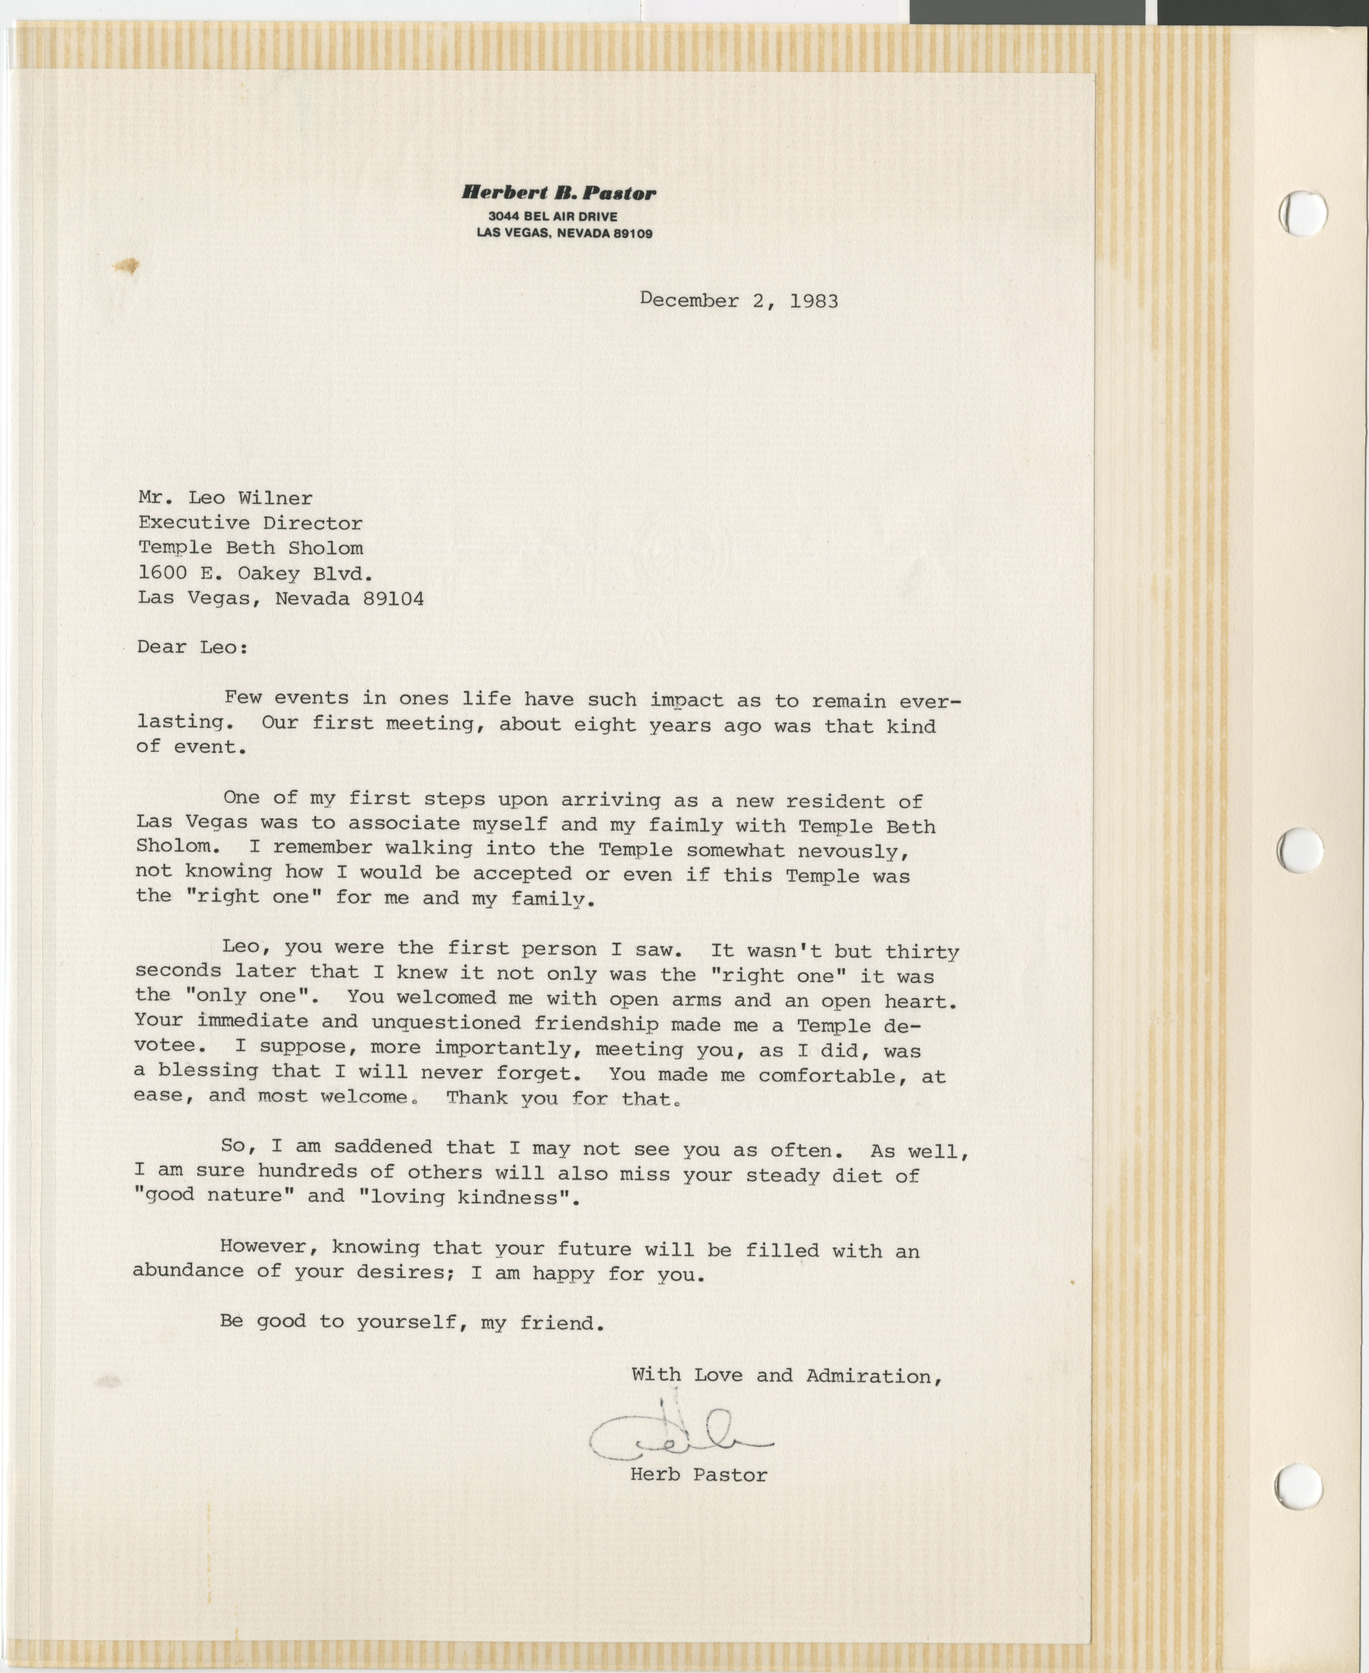 Letter from Herb Pastor (Las Vegas, Nev.) to Leo Wilner, December 2, 1983